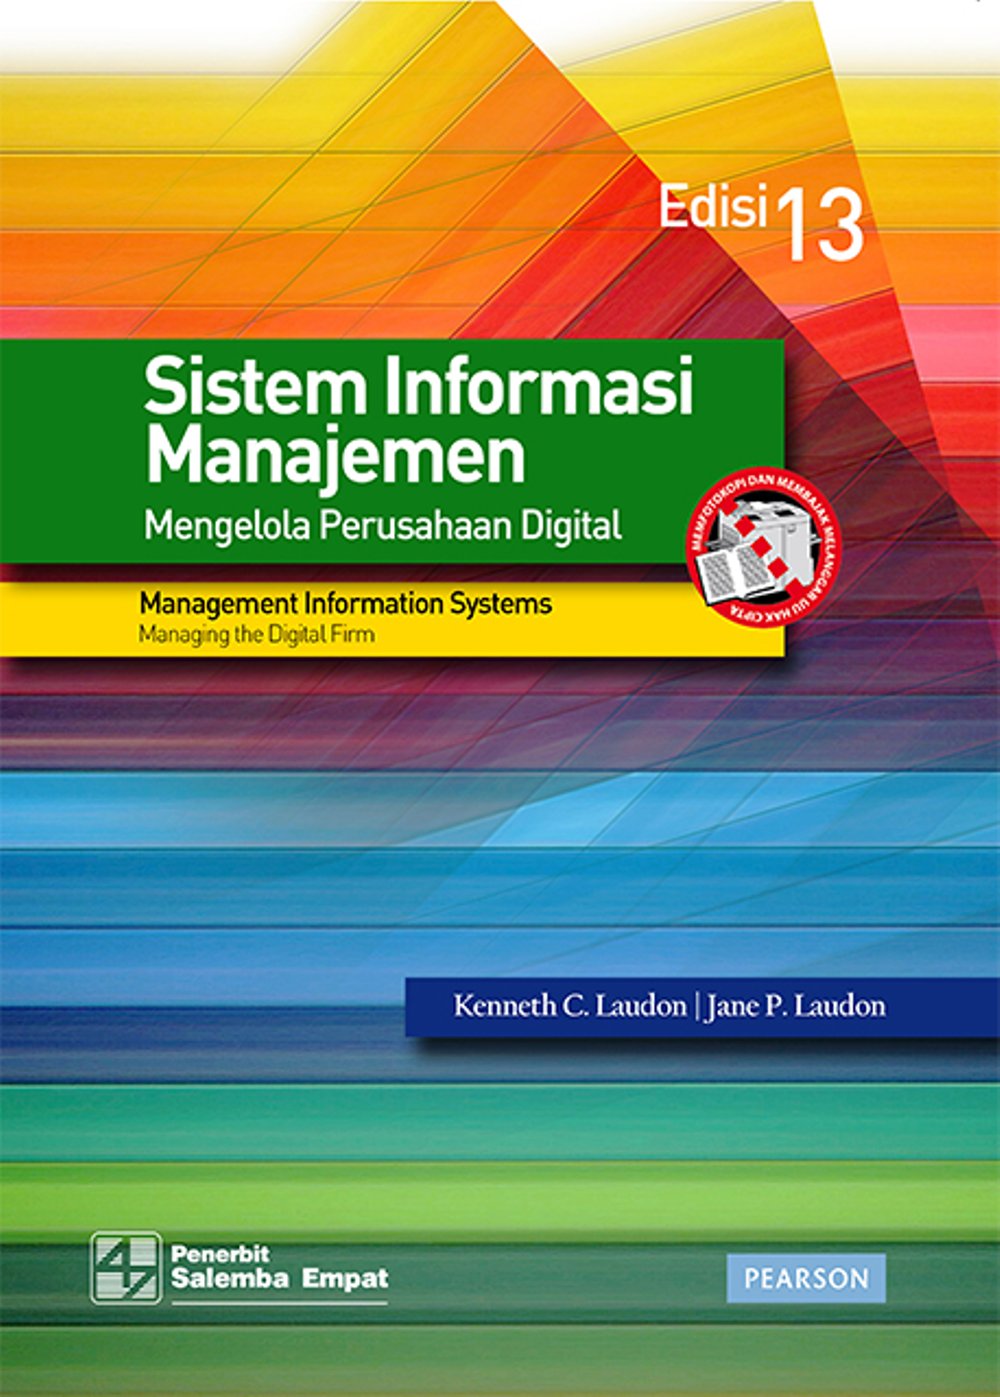 Sistem informasi manajemen edisi 13